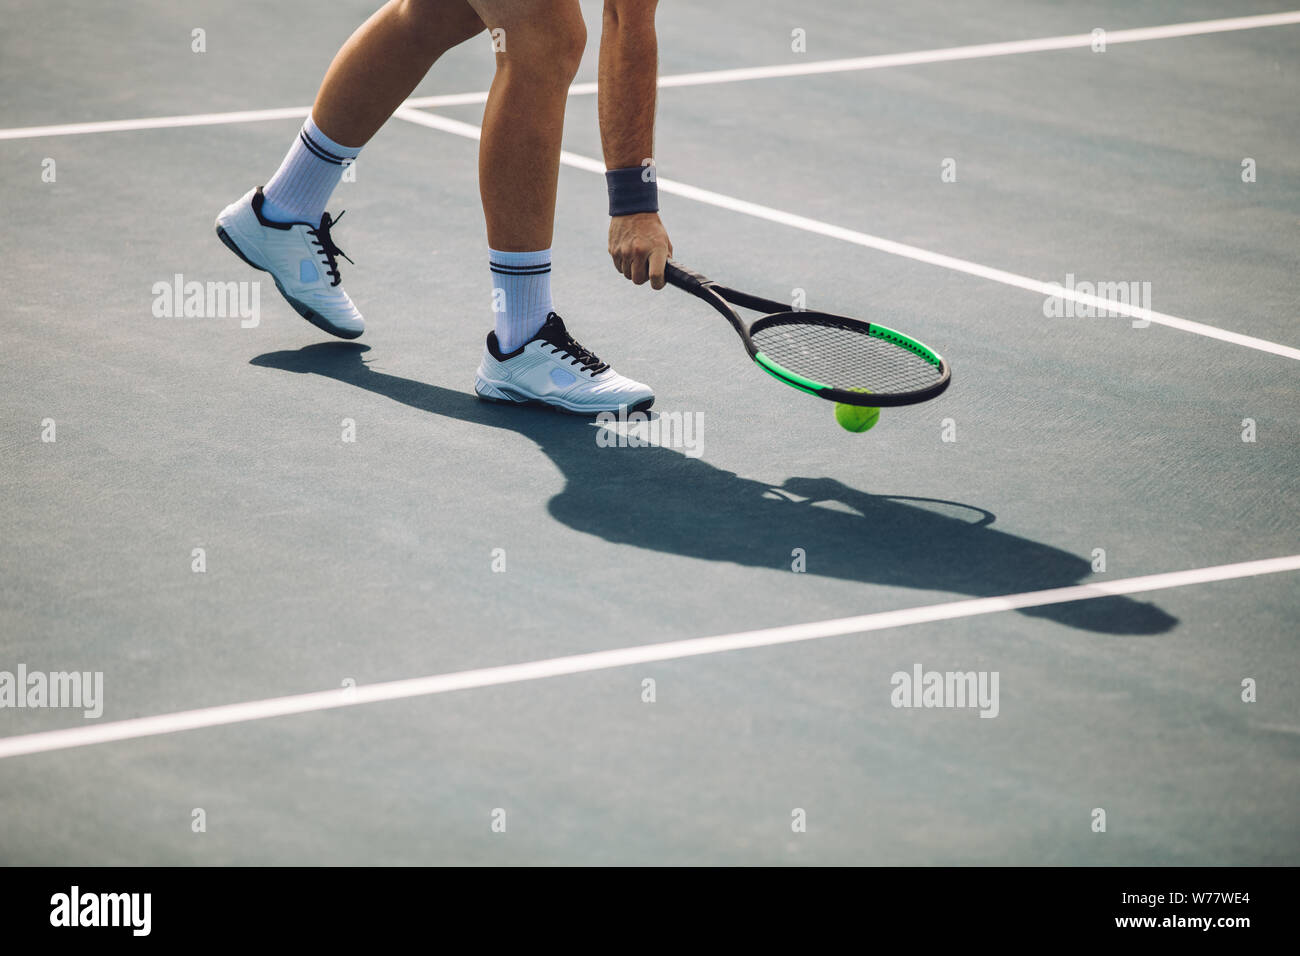 Cropped shot de sportif sur tennis picking la balle avec la raquette. Joueur de tennis masculin ramasser la balle sur surface dure. Banque D'Images